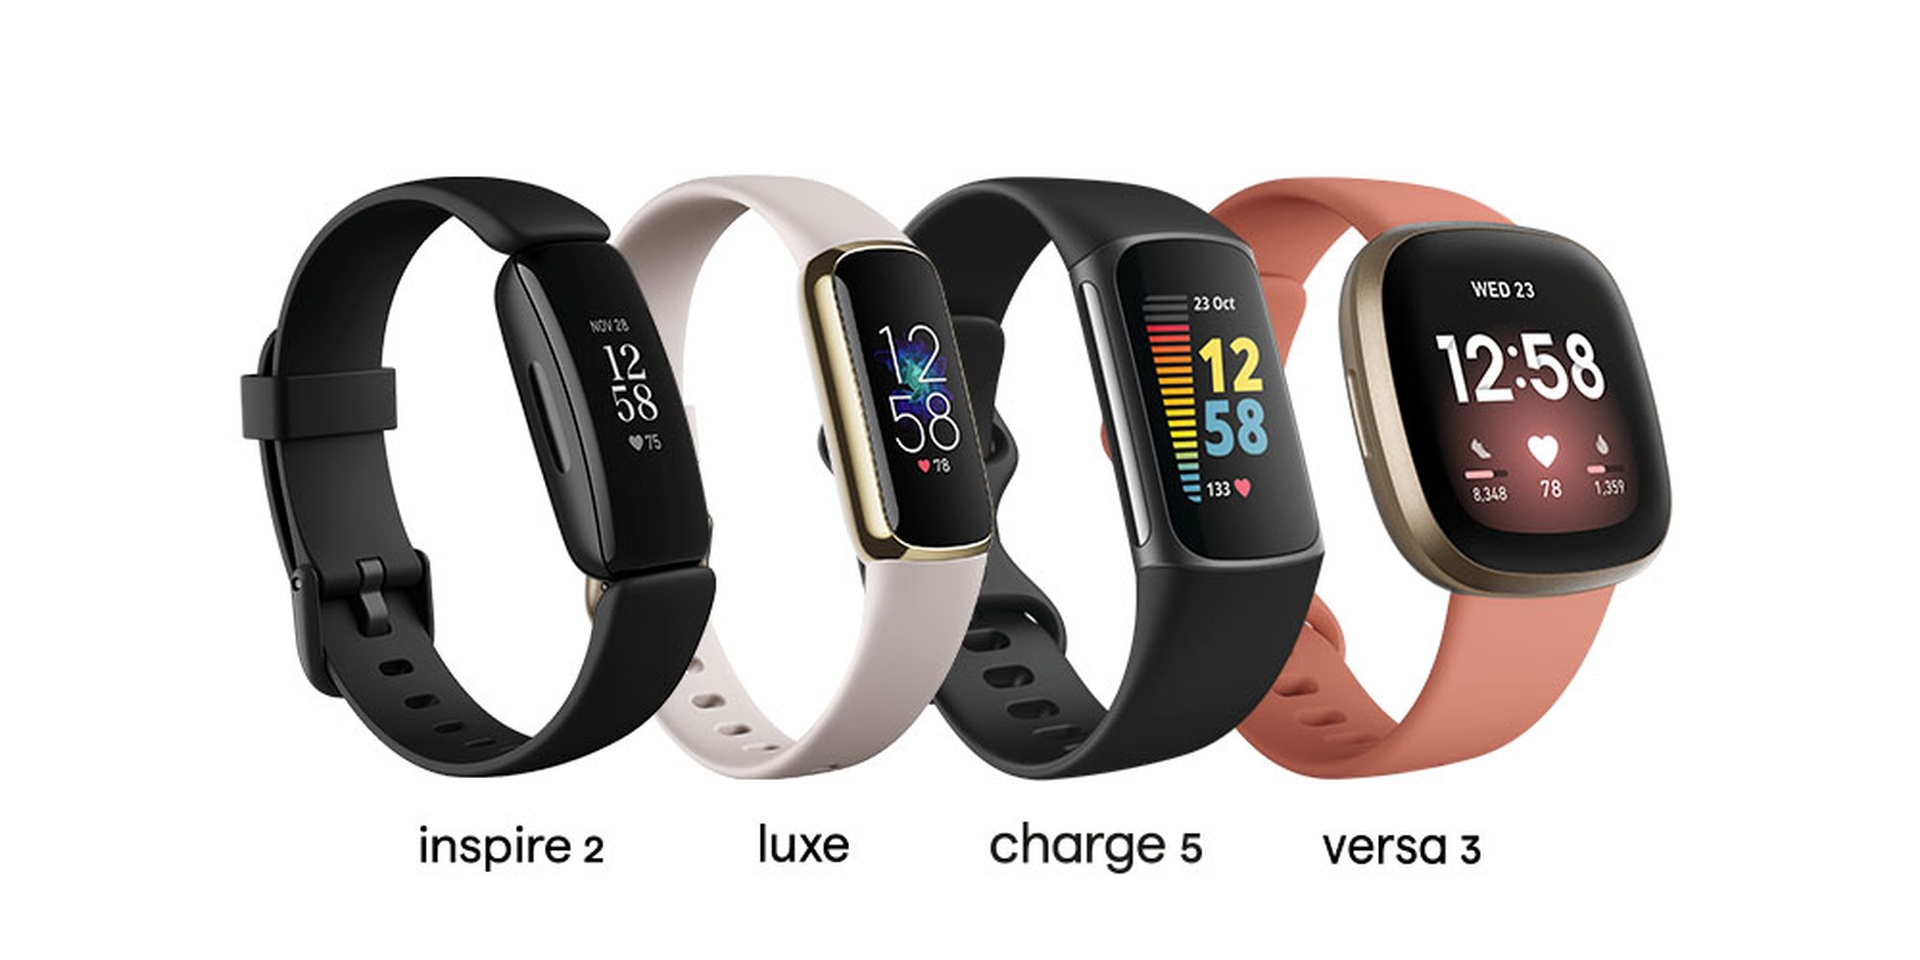 Aujourd'hui, nous allons passer en revue notre comparaison Apple Watch vs Fitbit, afin que vous puissiez connaître tous les avantages et inconvénients et prendre une décision éclairée avant d'acheter.